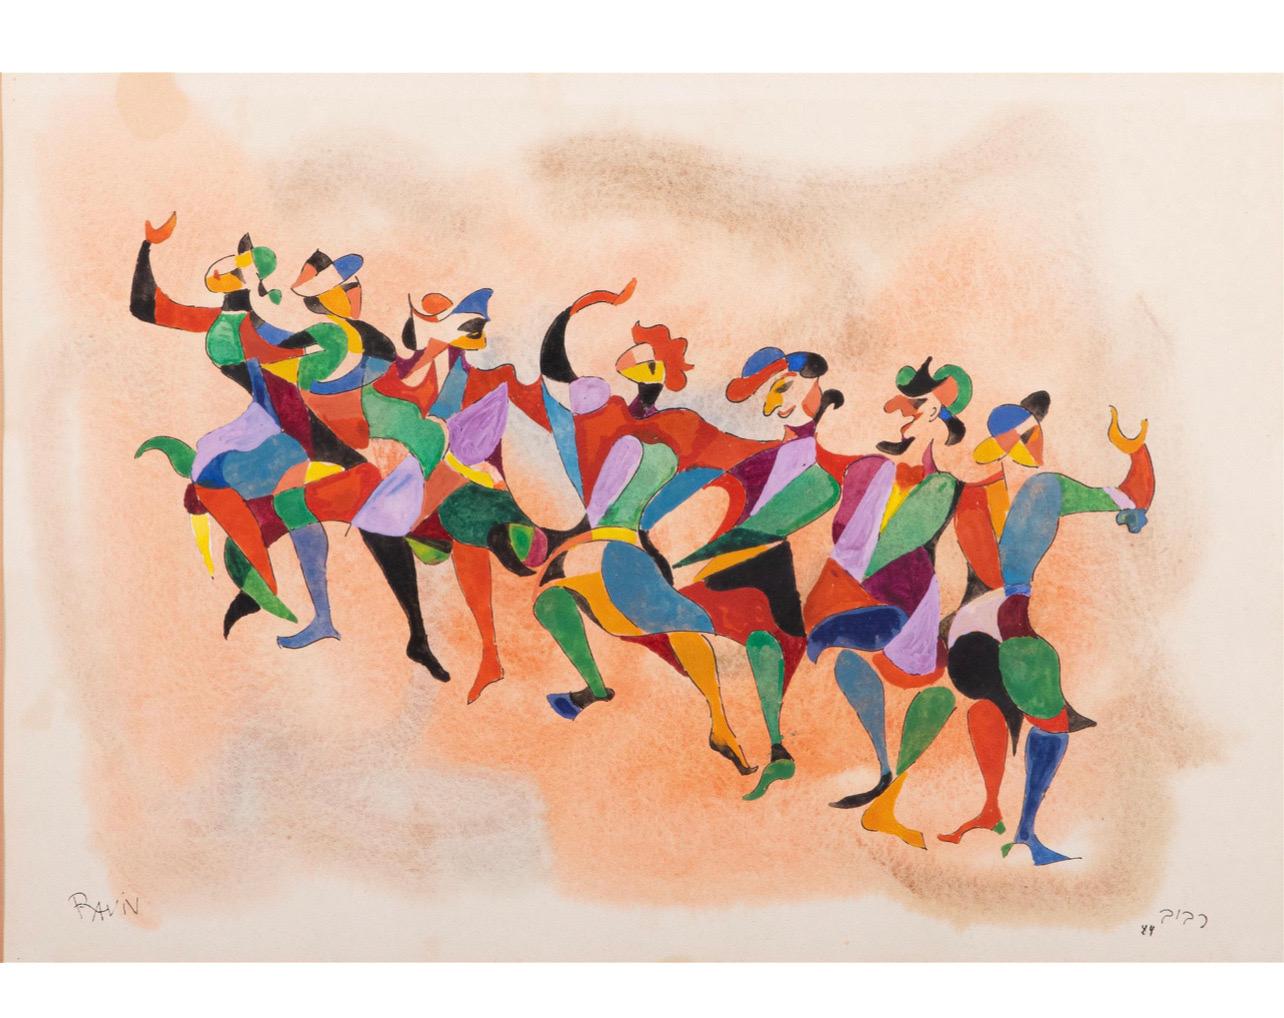 Bauhaus Moshe Raviv Moi Ver Abstract Dancing Painting Lithuanian Israeli Modern - Mixed Media Art by Moi Ver (Moshe Raviv Vorobeichic)